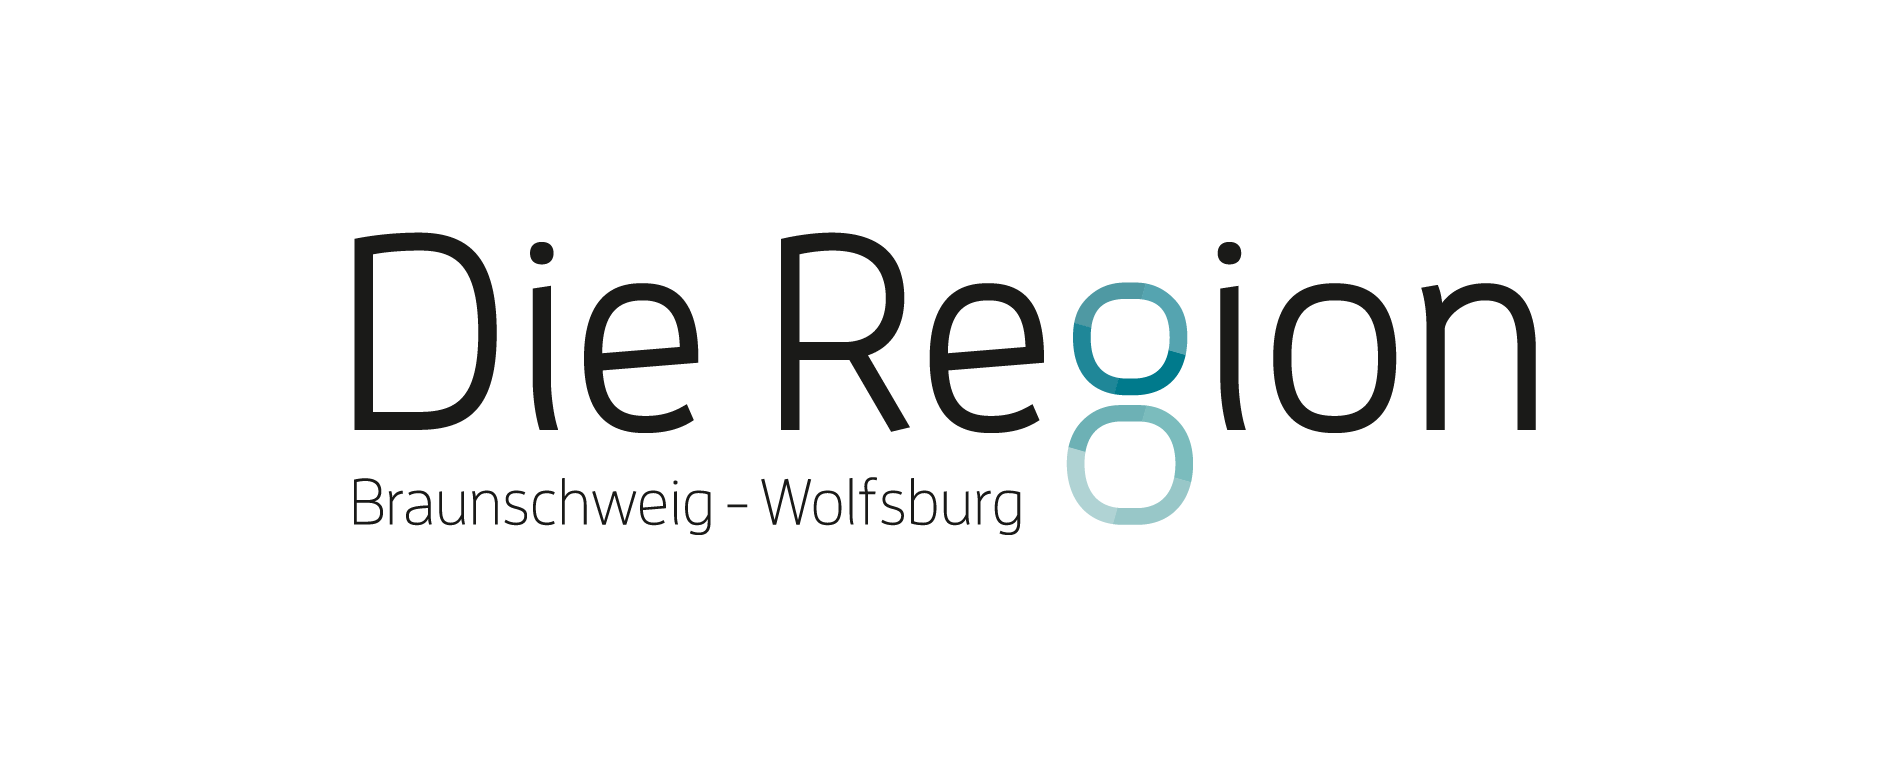 Die Region Braunschweig Wolfsburg